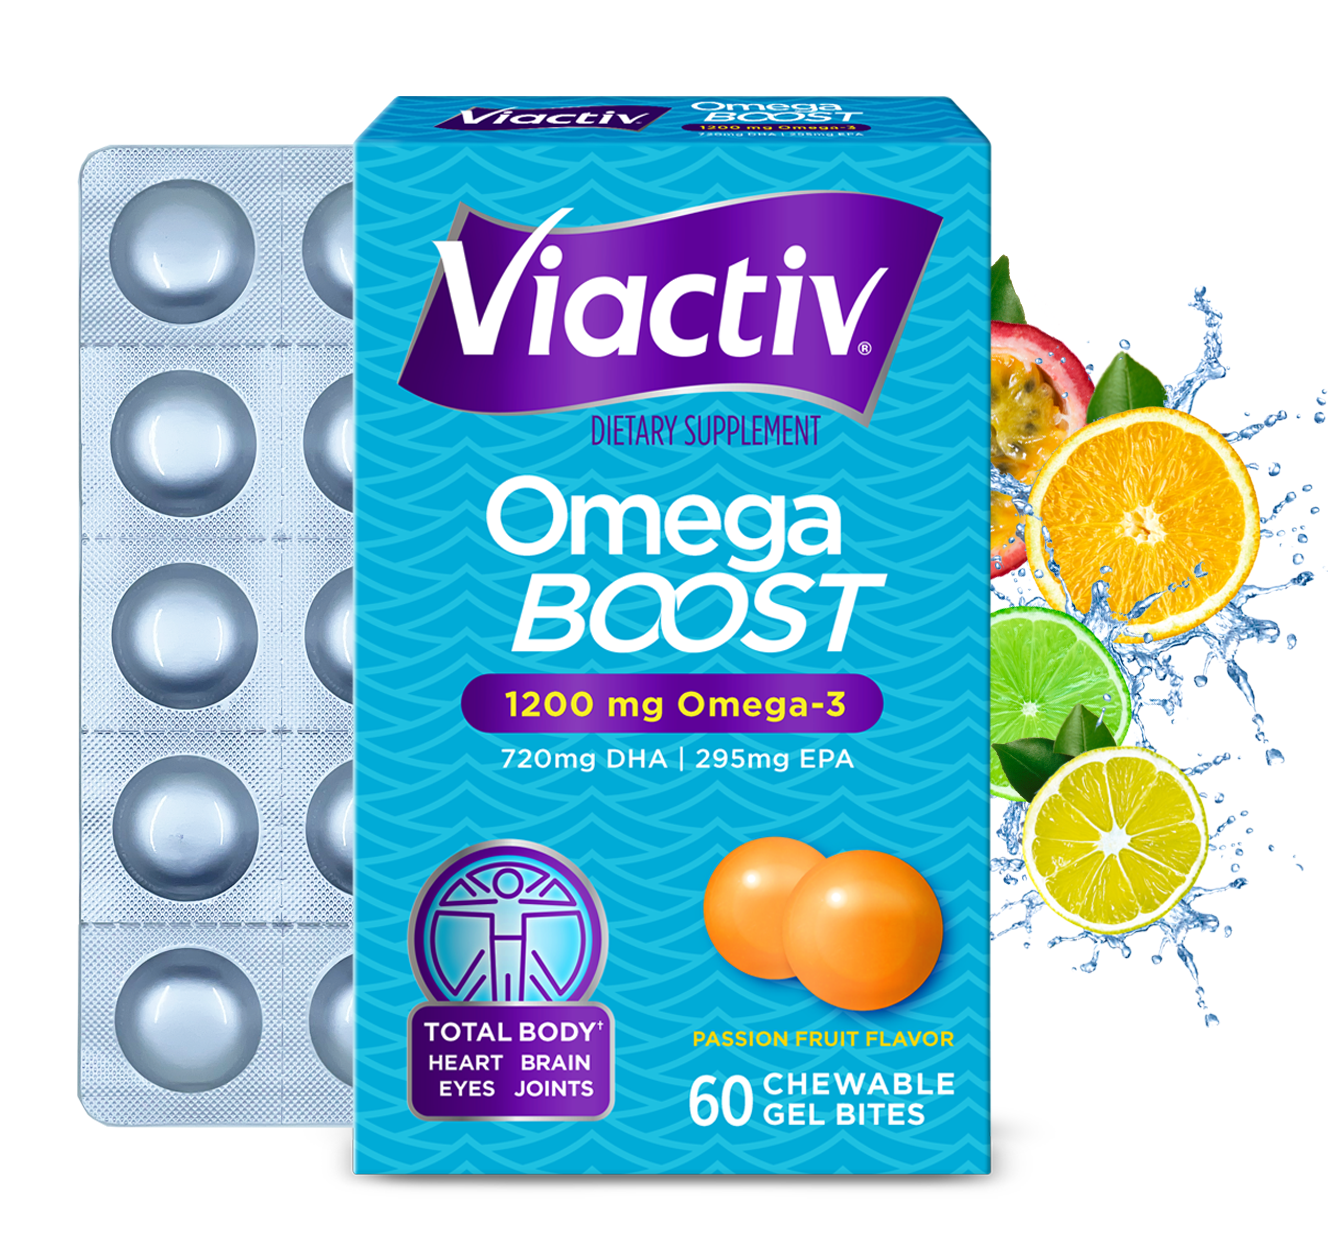 Viactiv Omega Boost Front Packaging